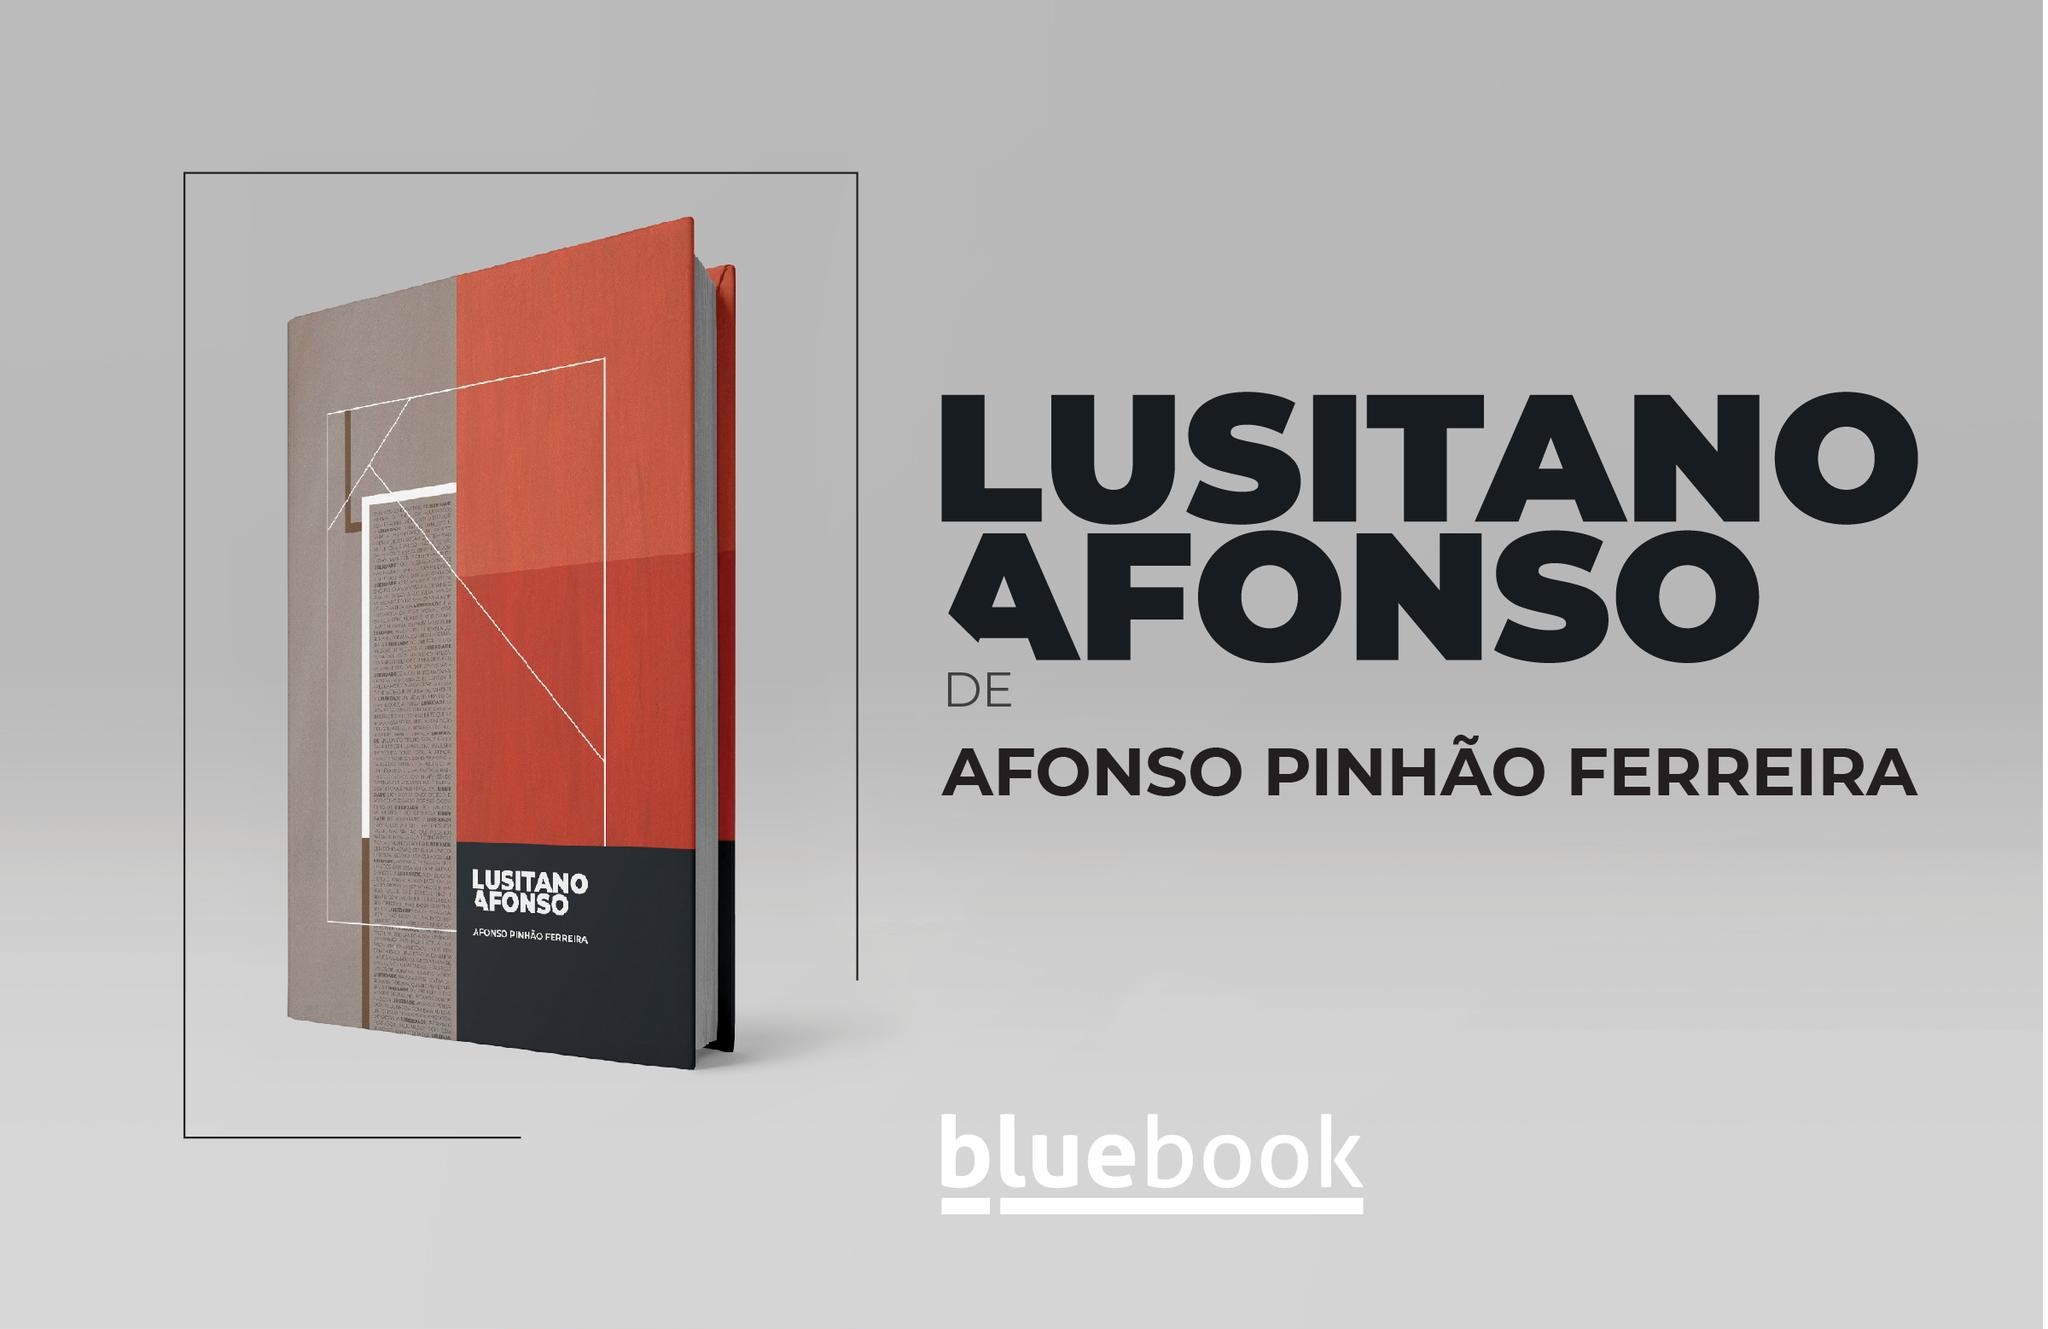 Imagem da notícia: Lusitano Afonso, o novo livro de Afonso Pinhão Ferreira